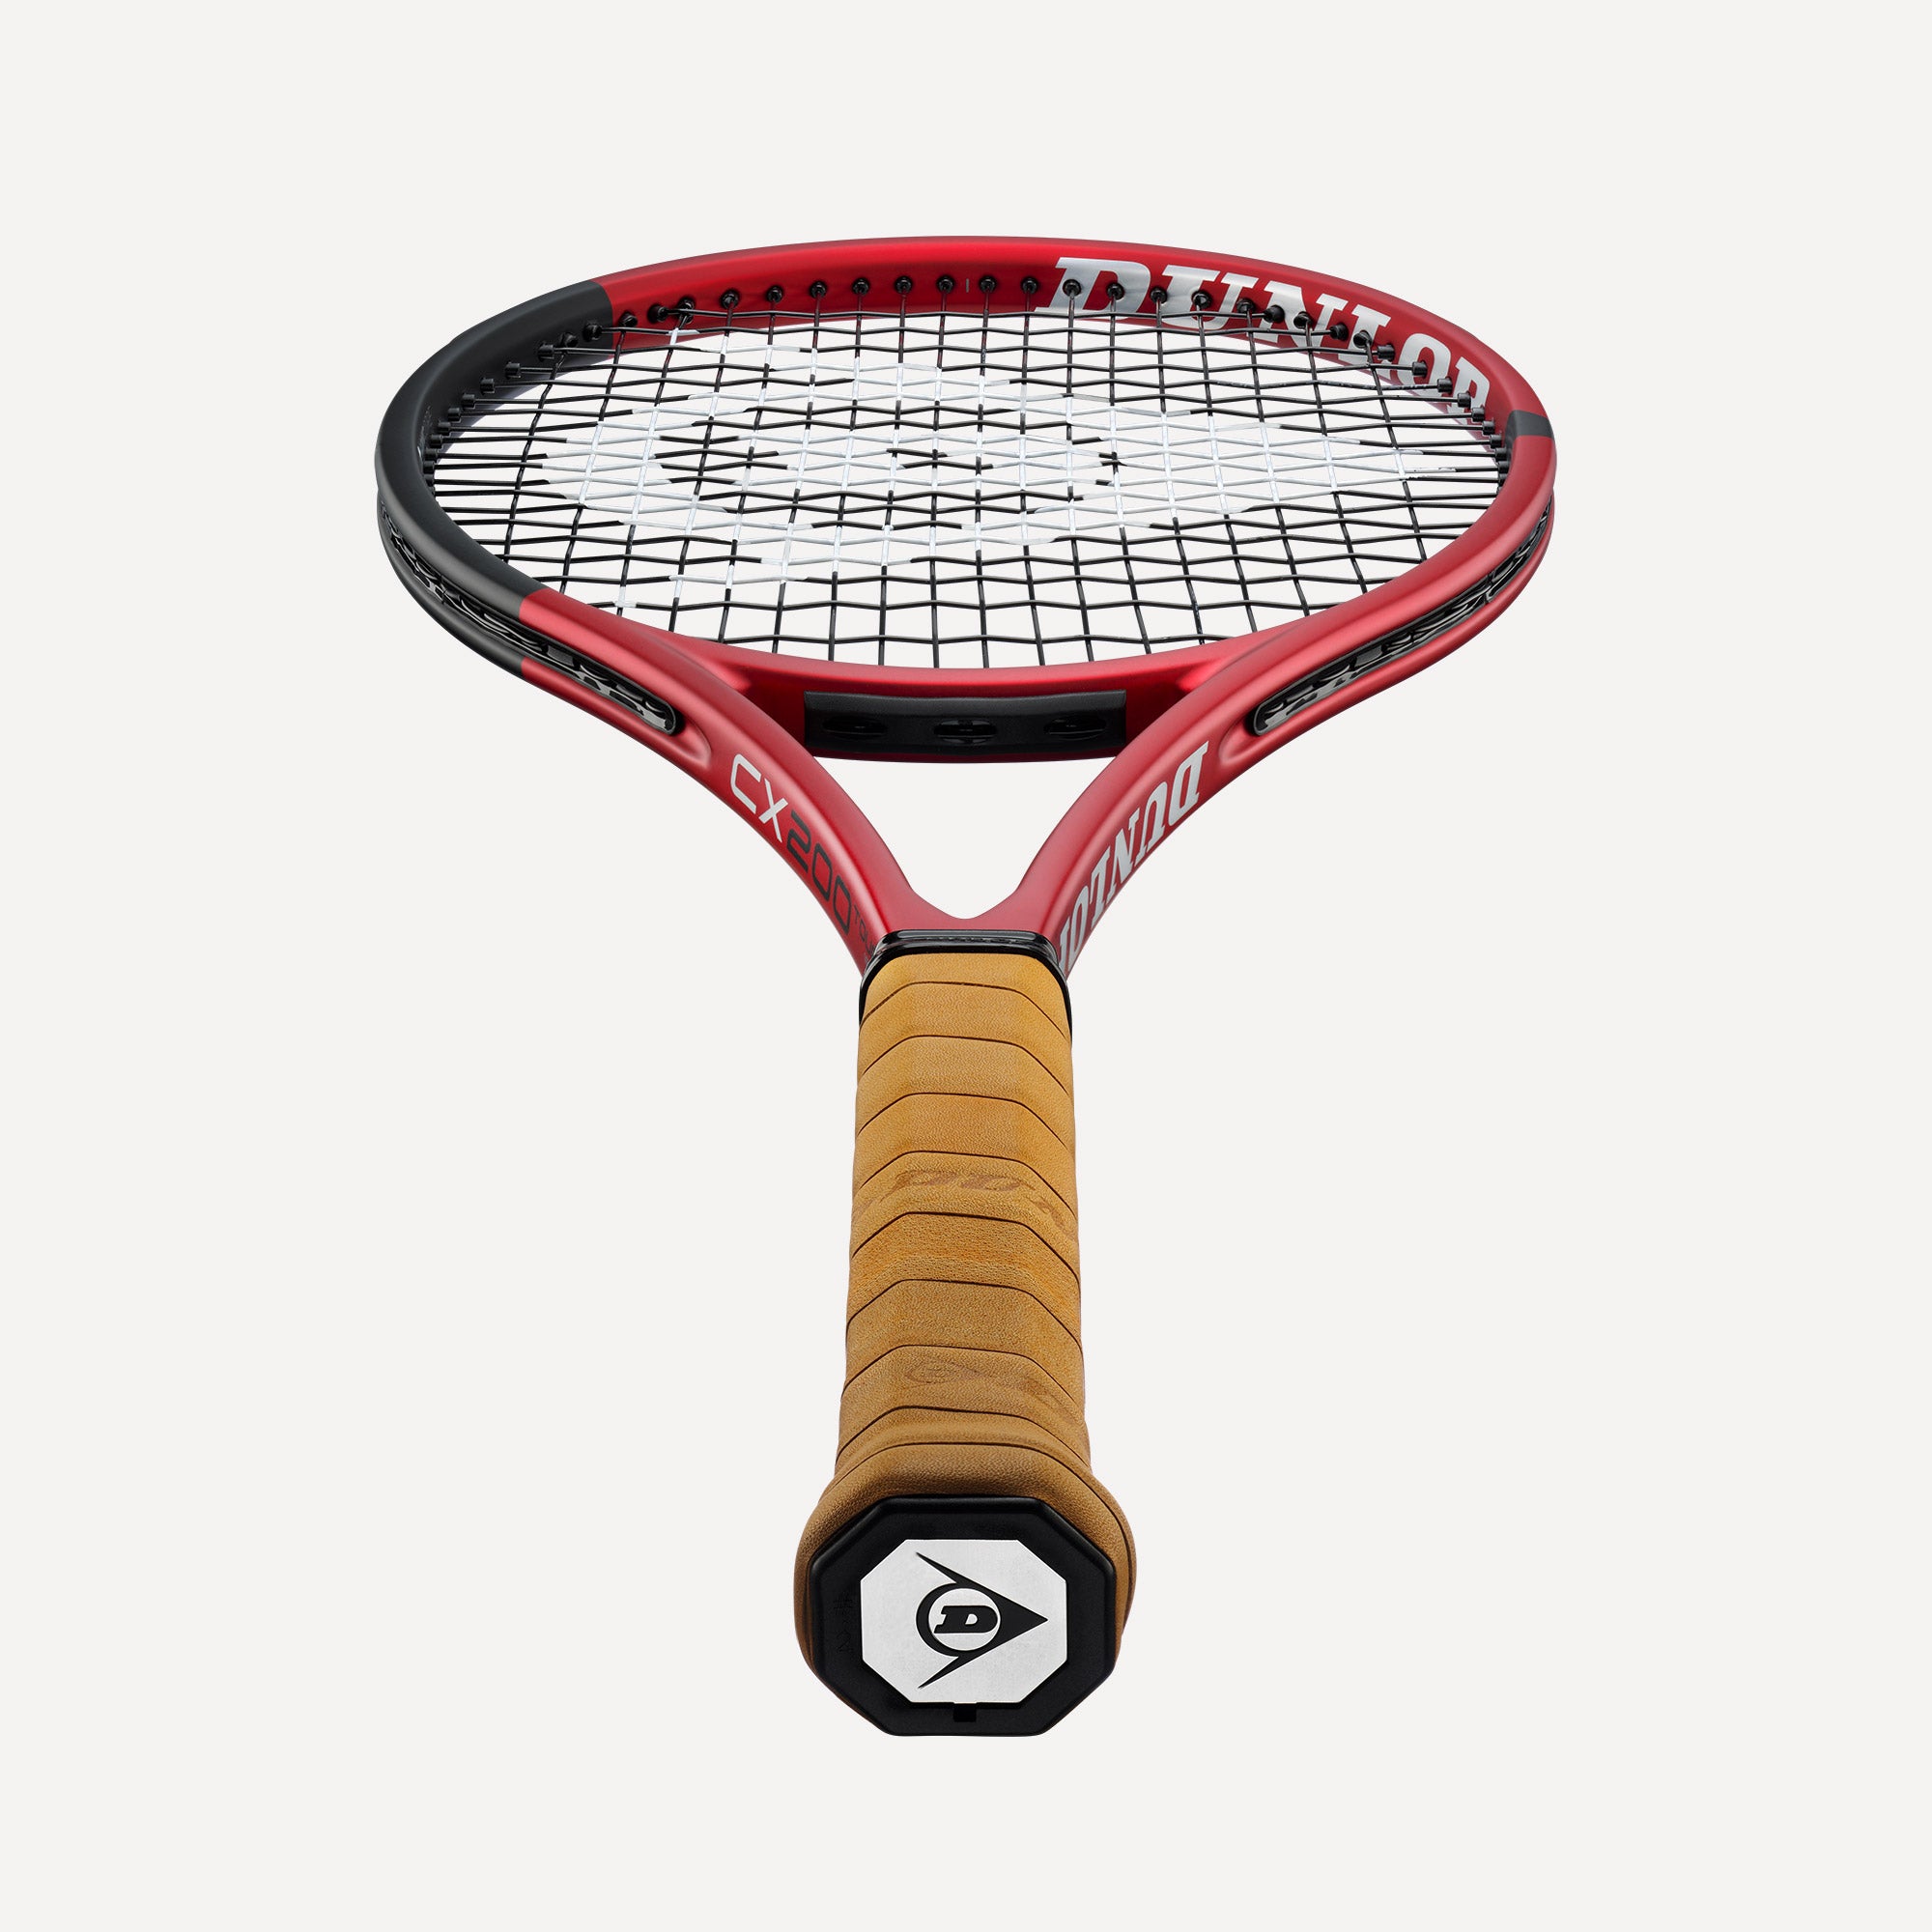 Dunlop CX 200 Tour 18x20 Tennis Racket  (3)